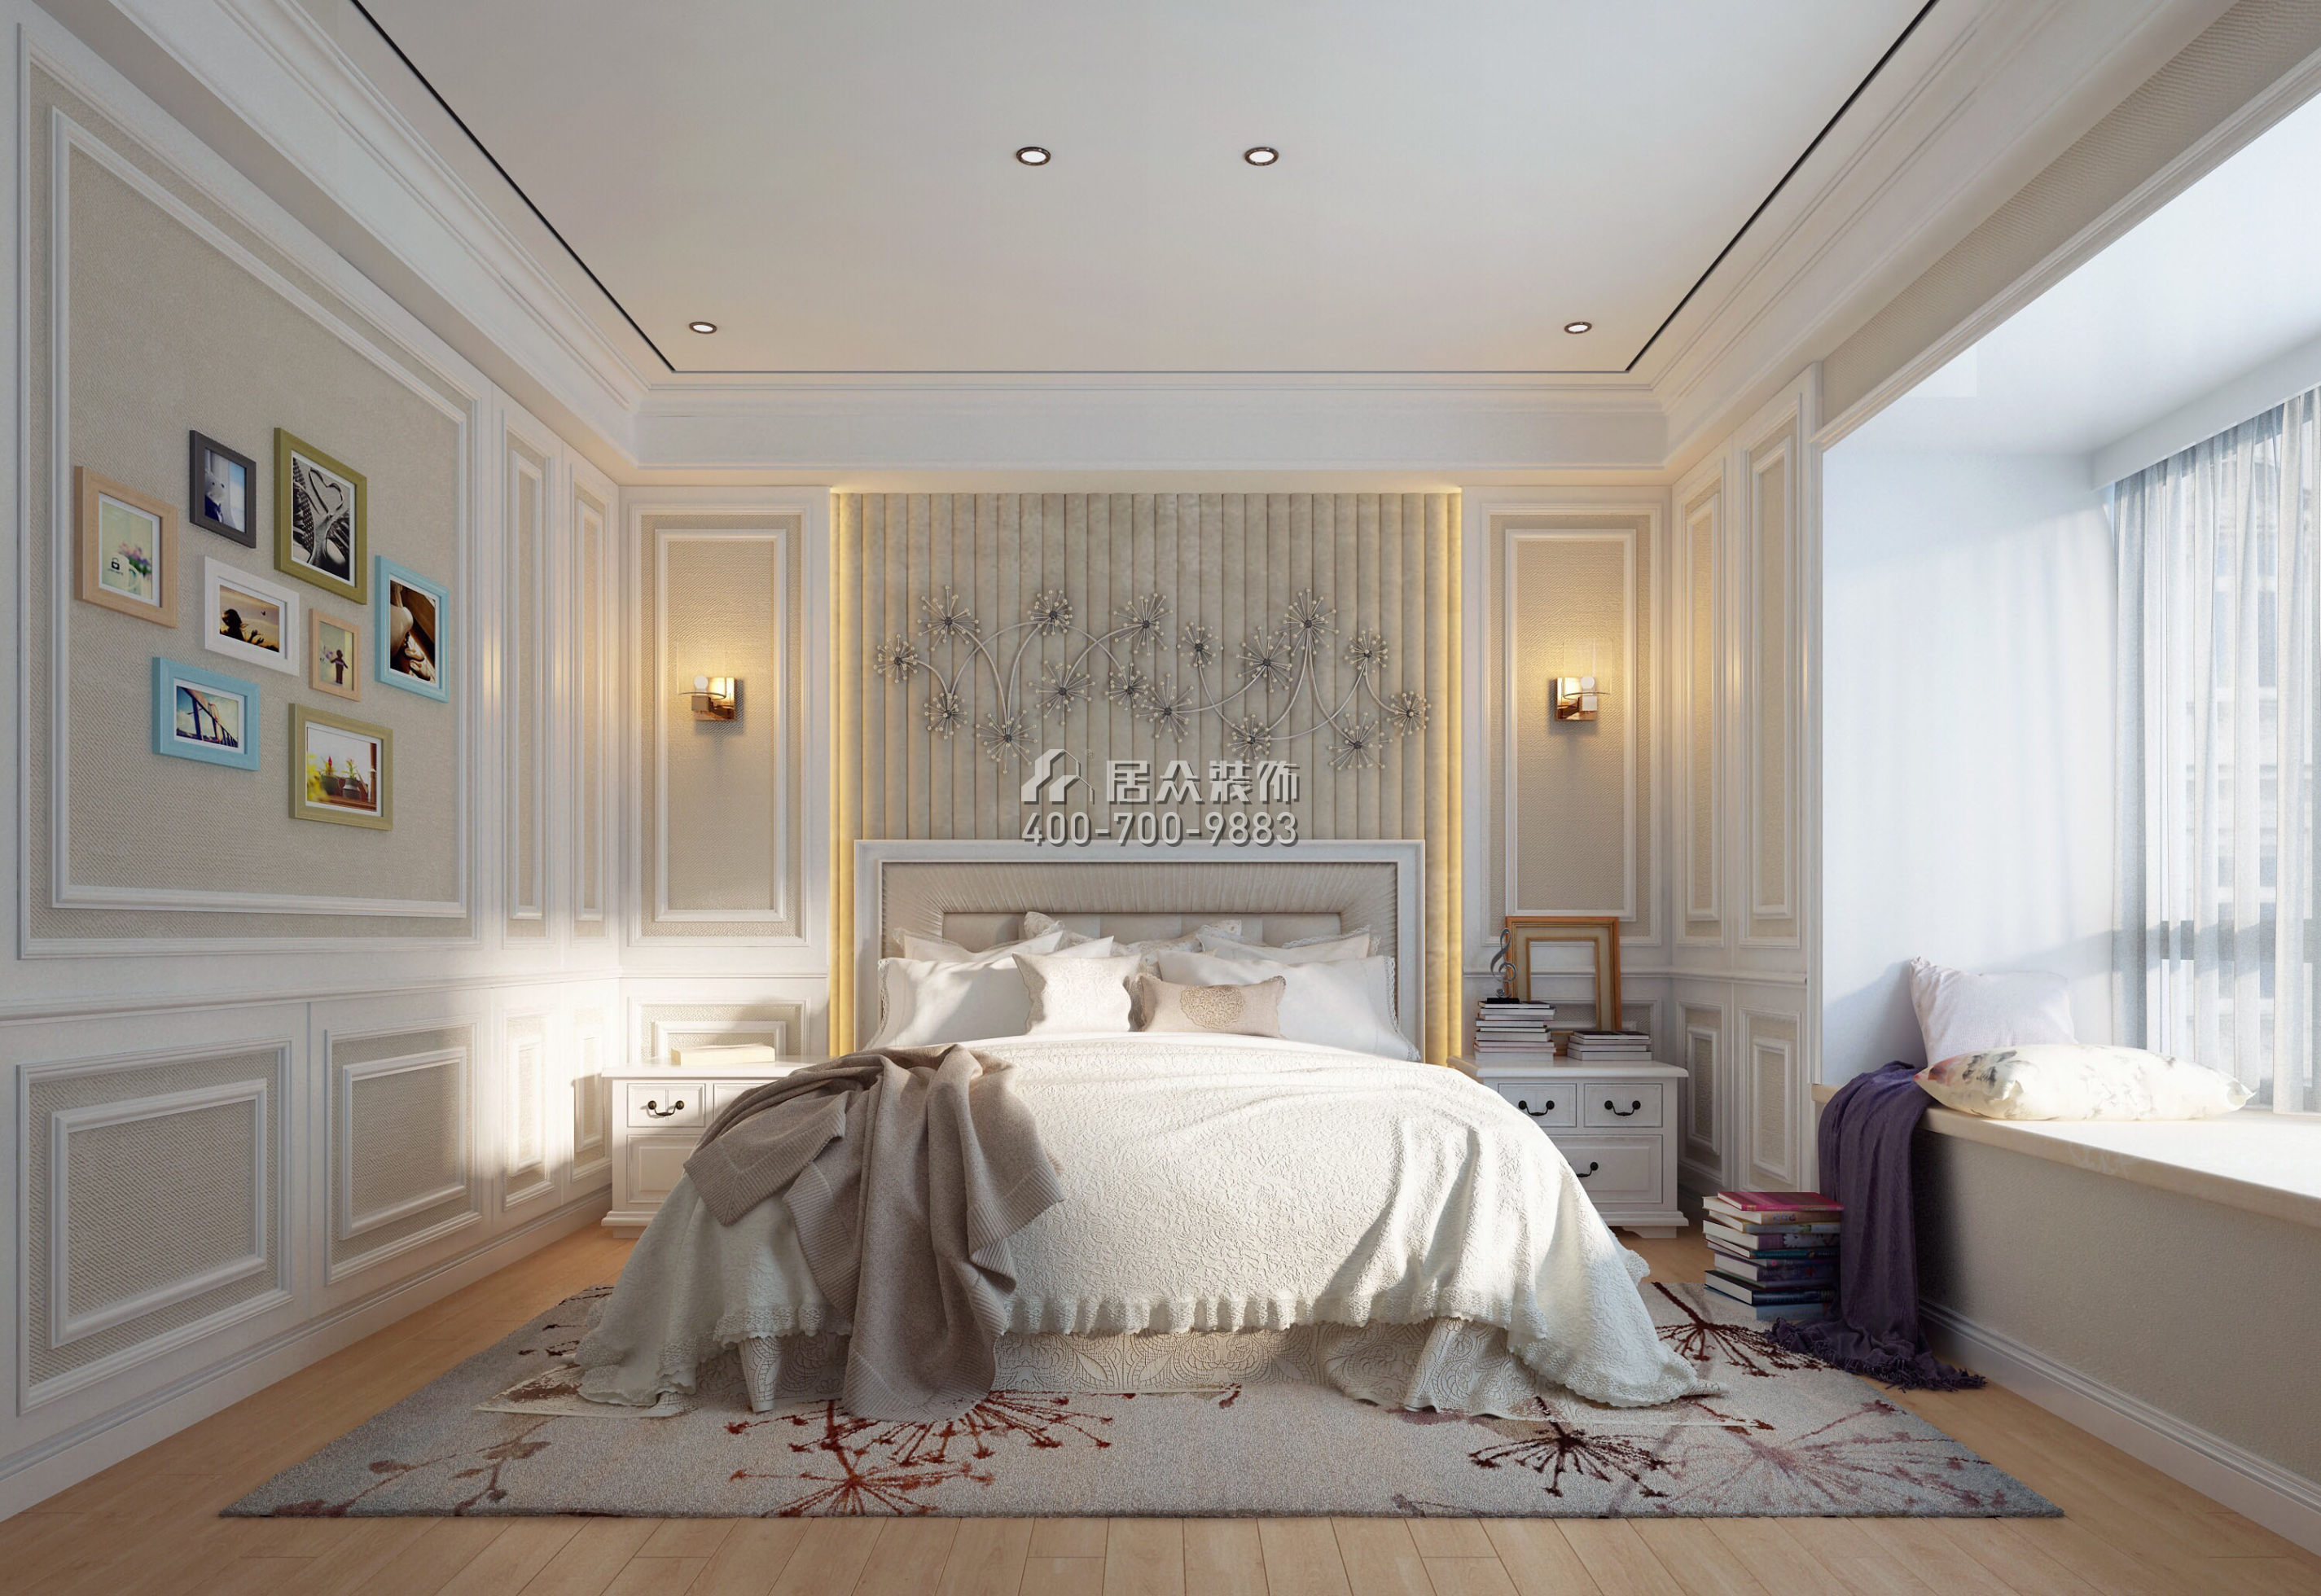 红树别院173平方米美式风格平层户型卧室装修效果图